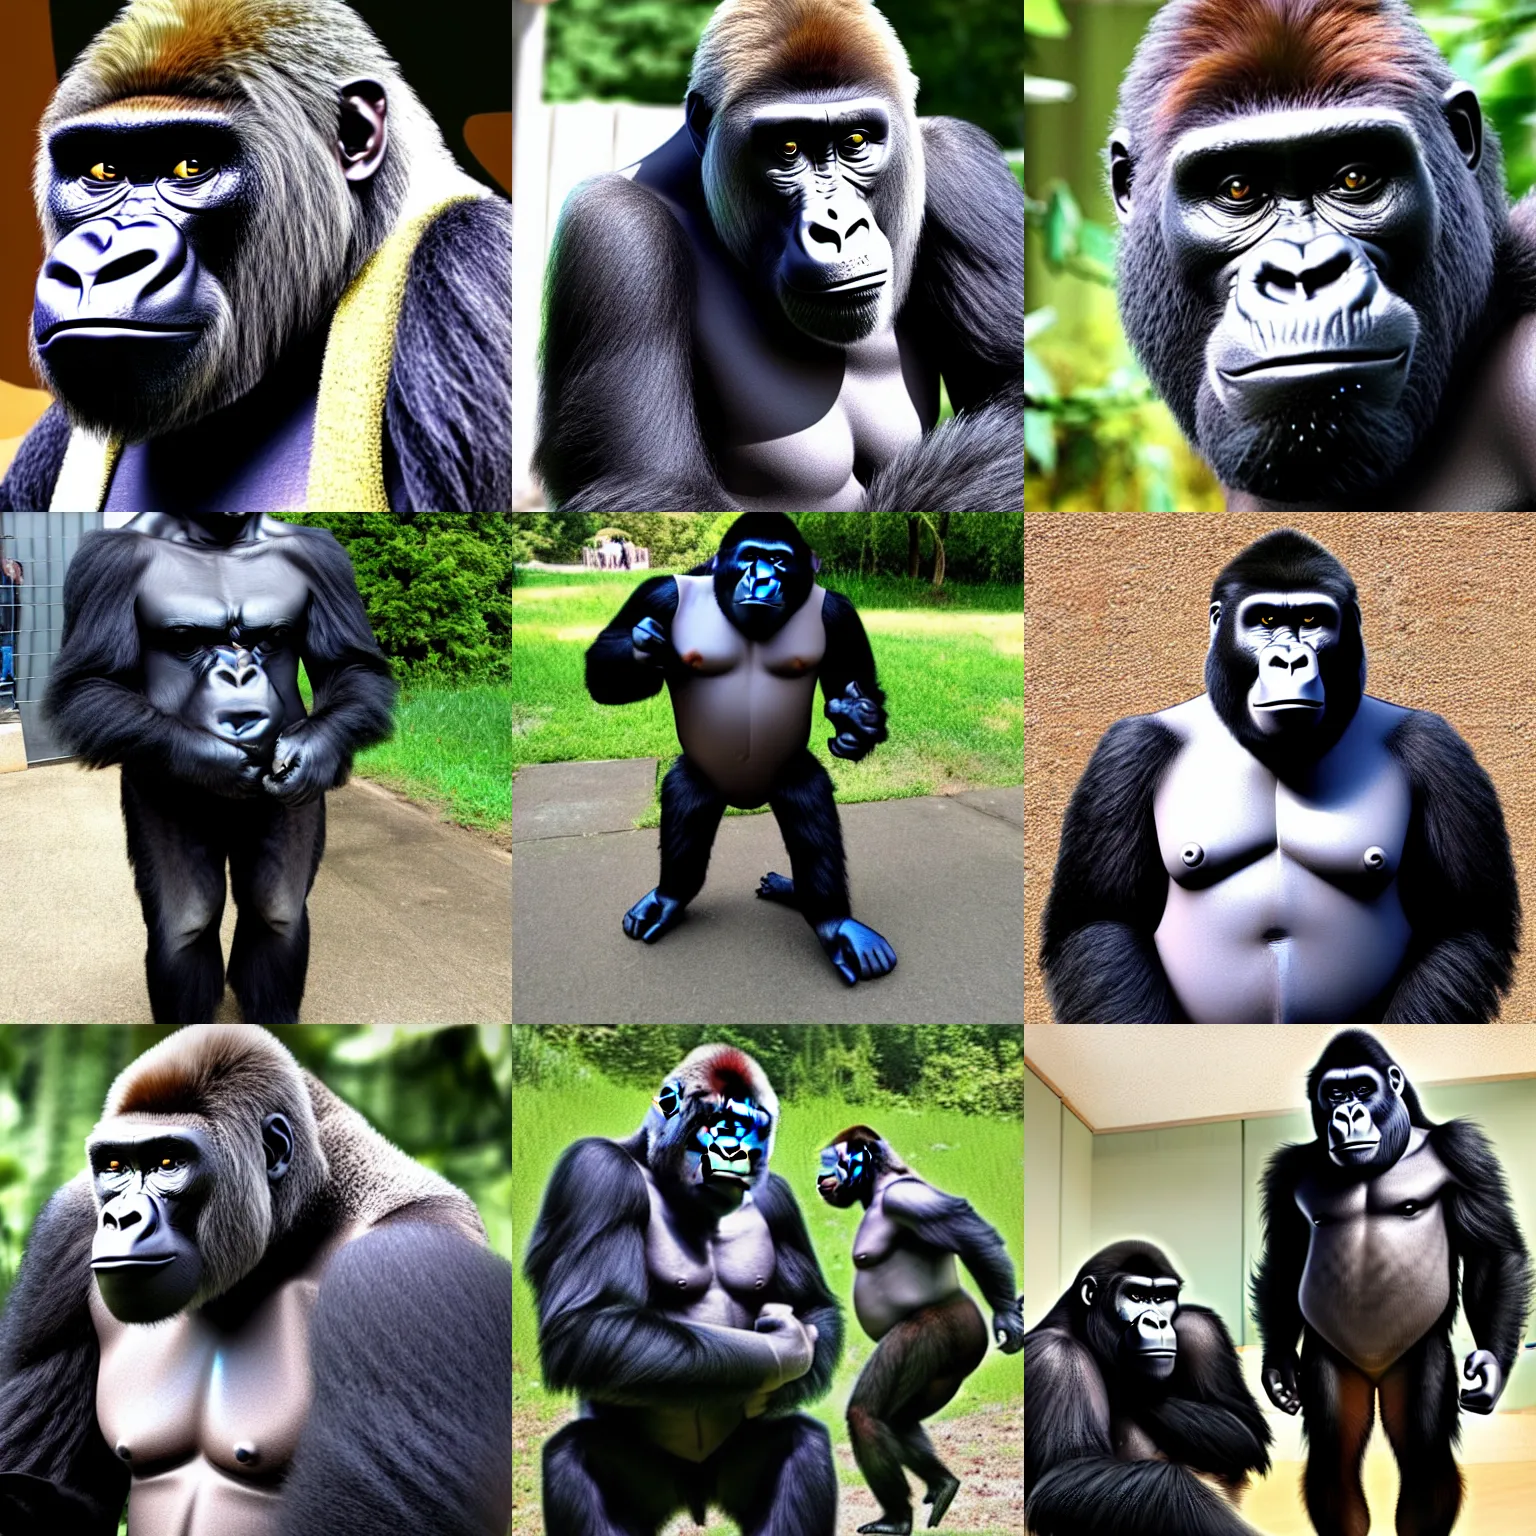 Prompt: gorilla as felonius gru